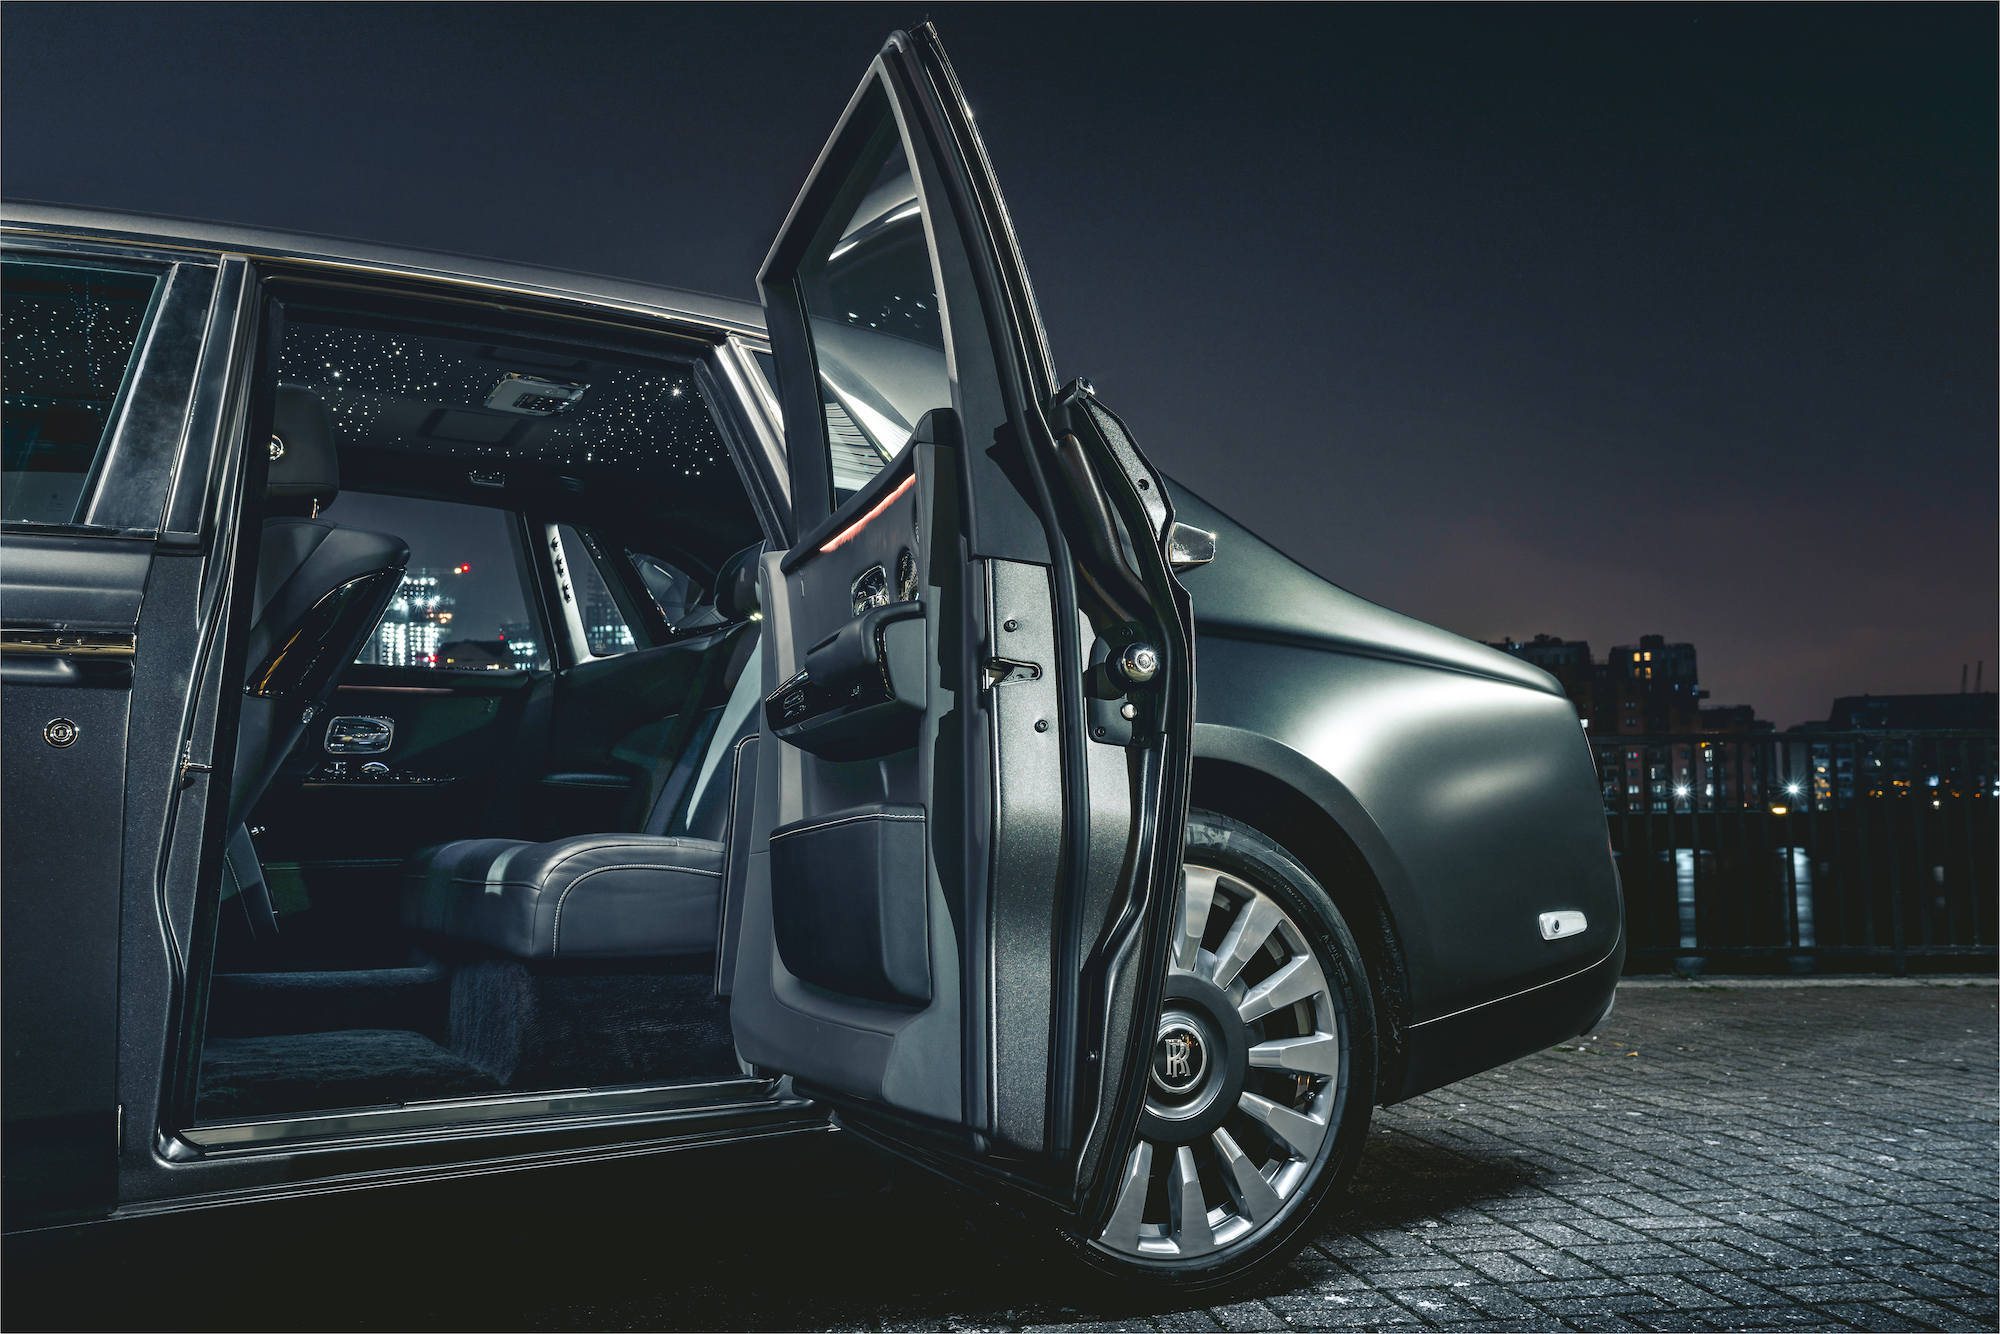 Rolls Royce sedan starlight interior